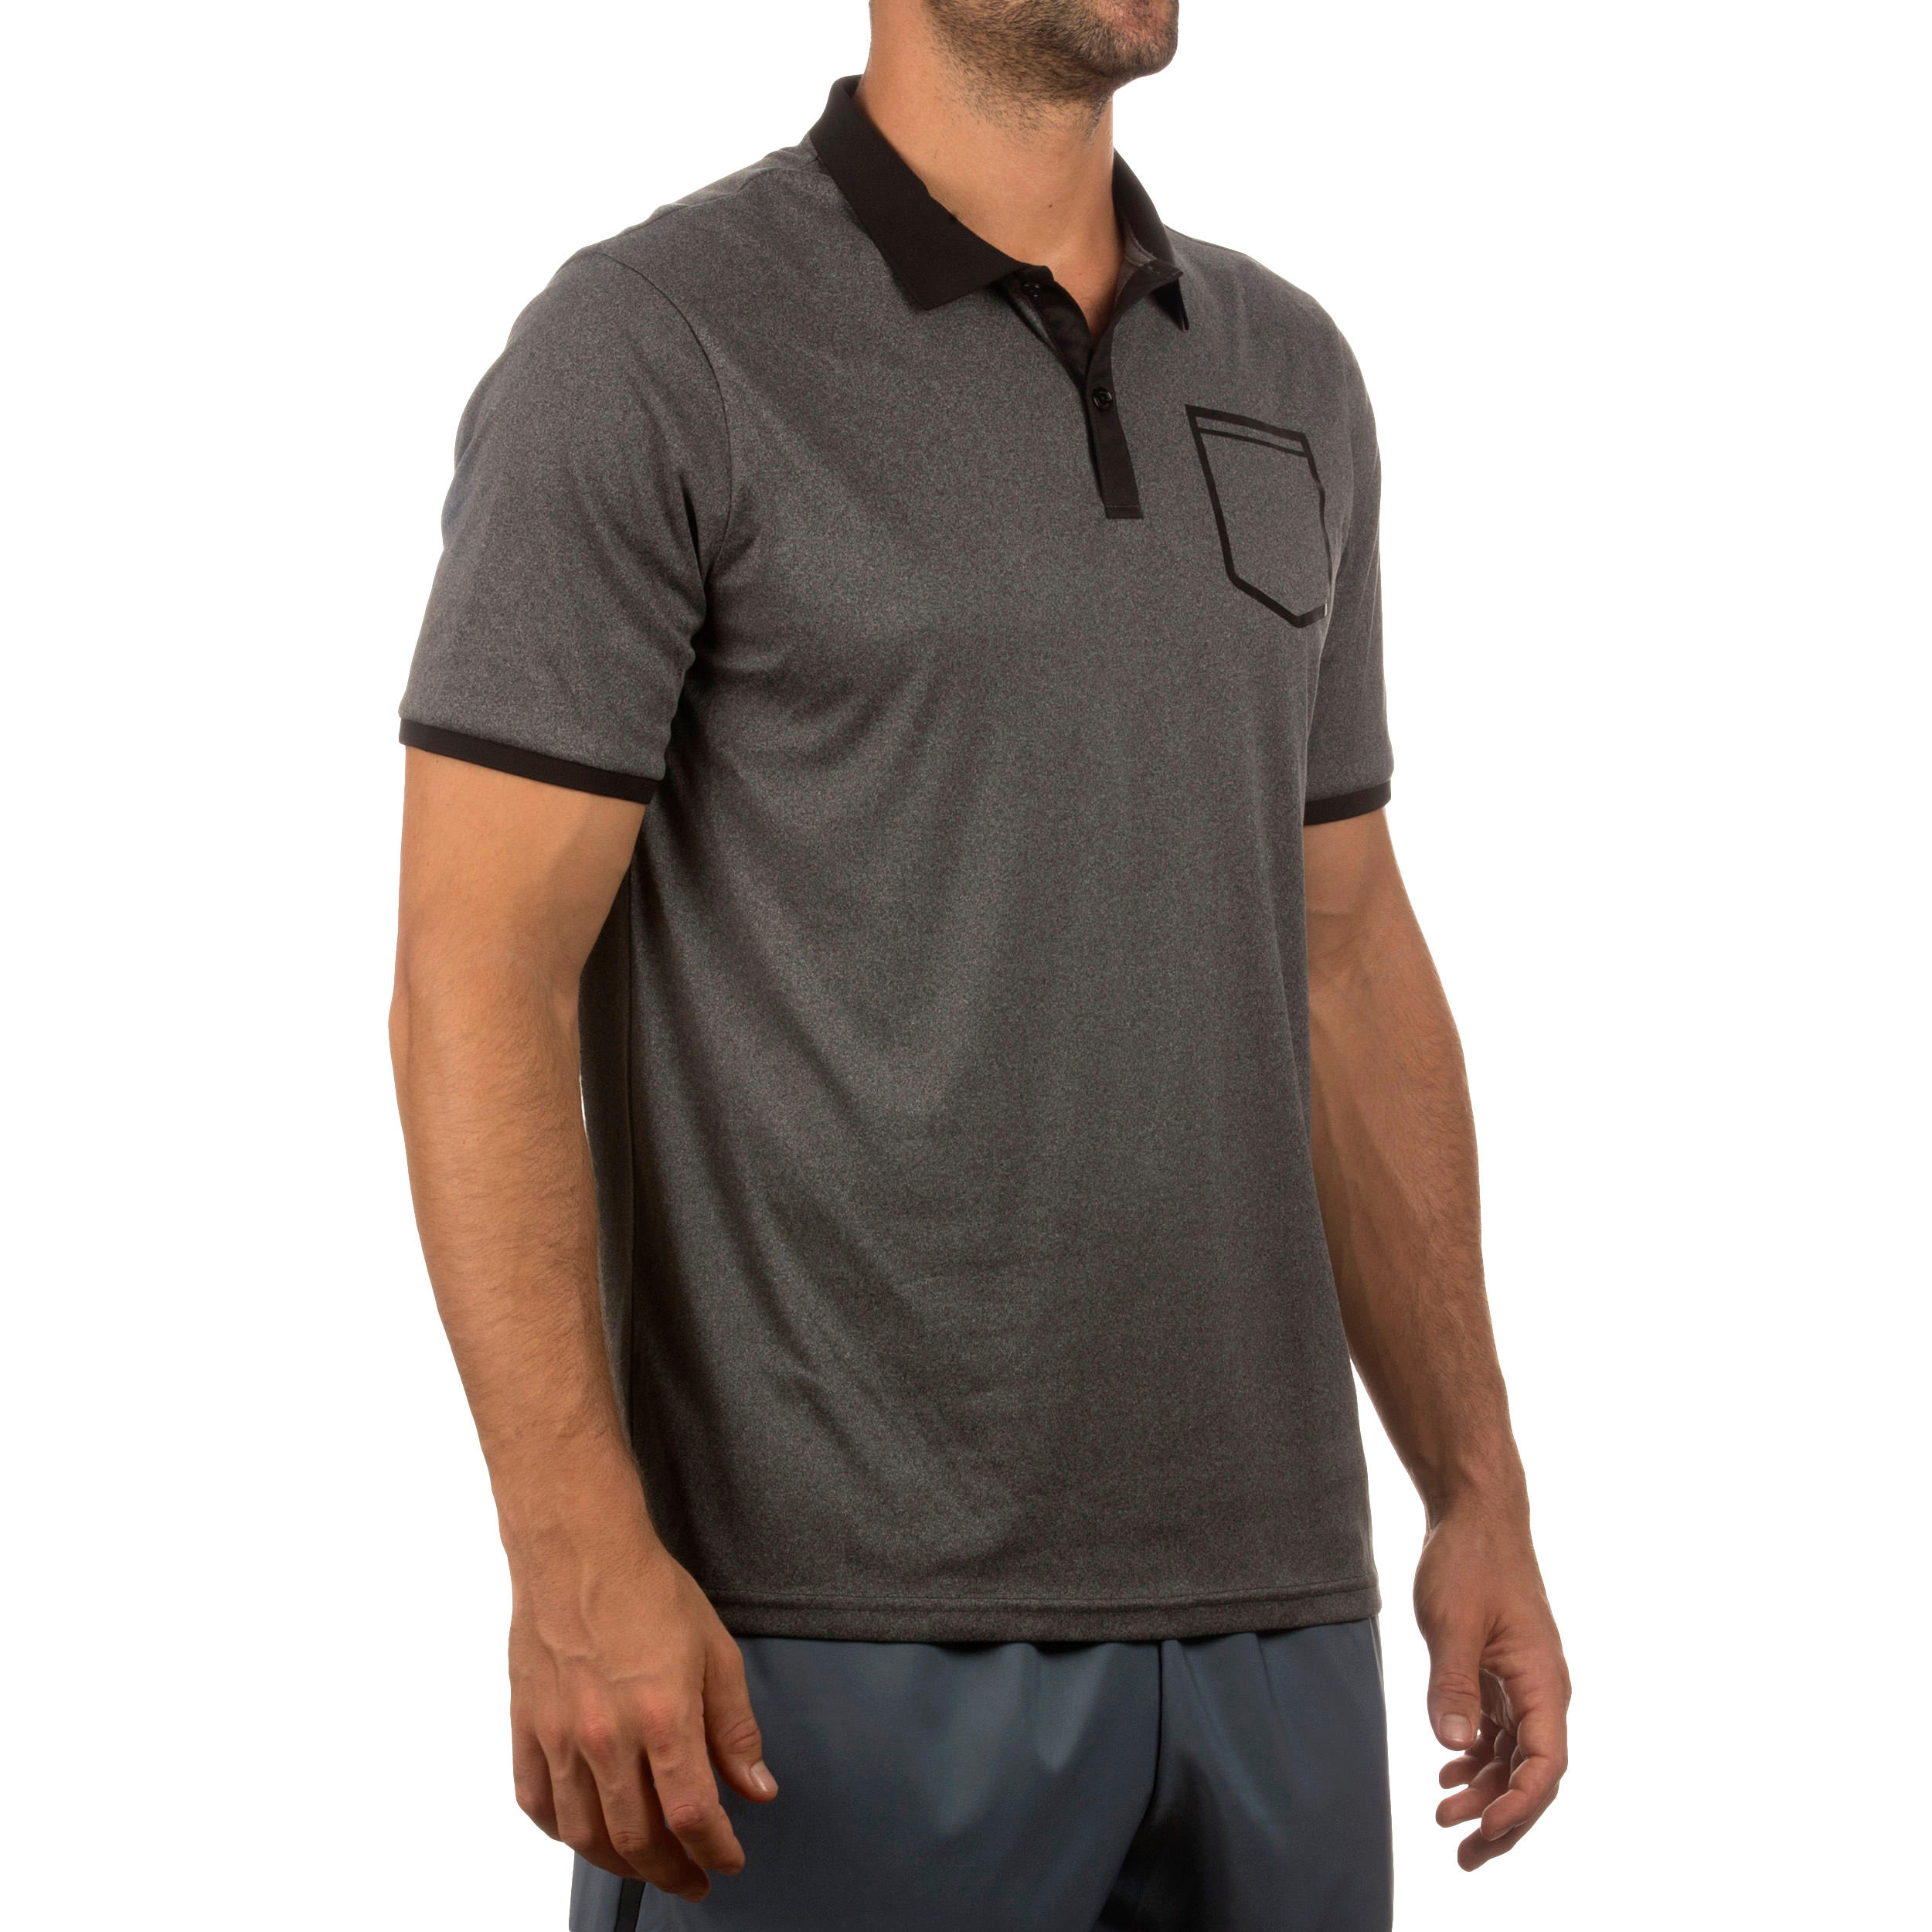 Soft Padel Tennis Badminton Squash Table Tennis Pocket Polo Shirt - Dark Grey 3/6